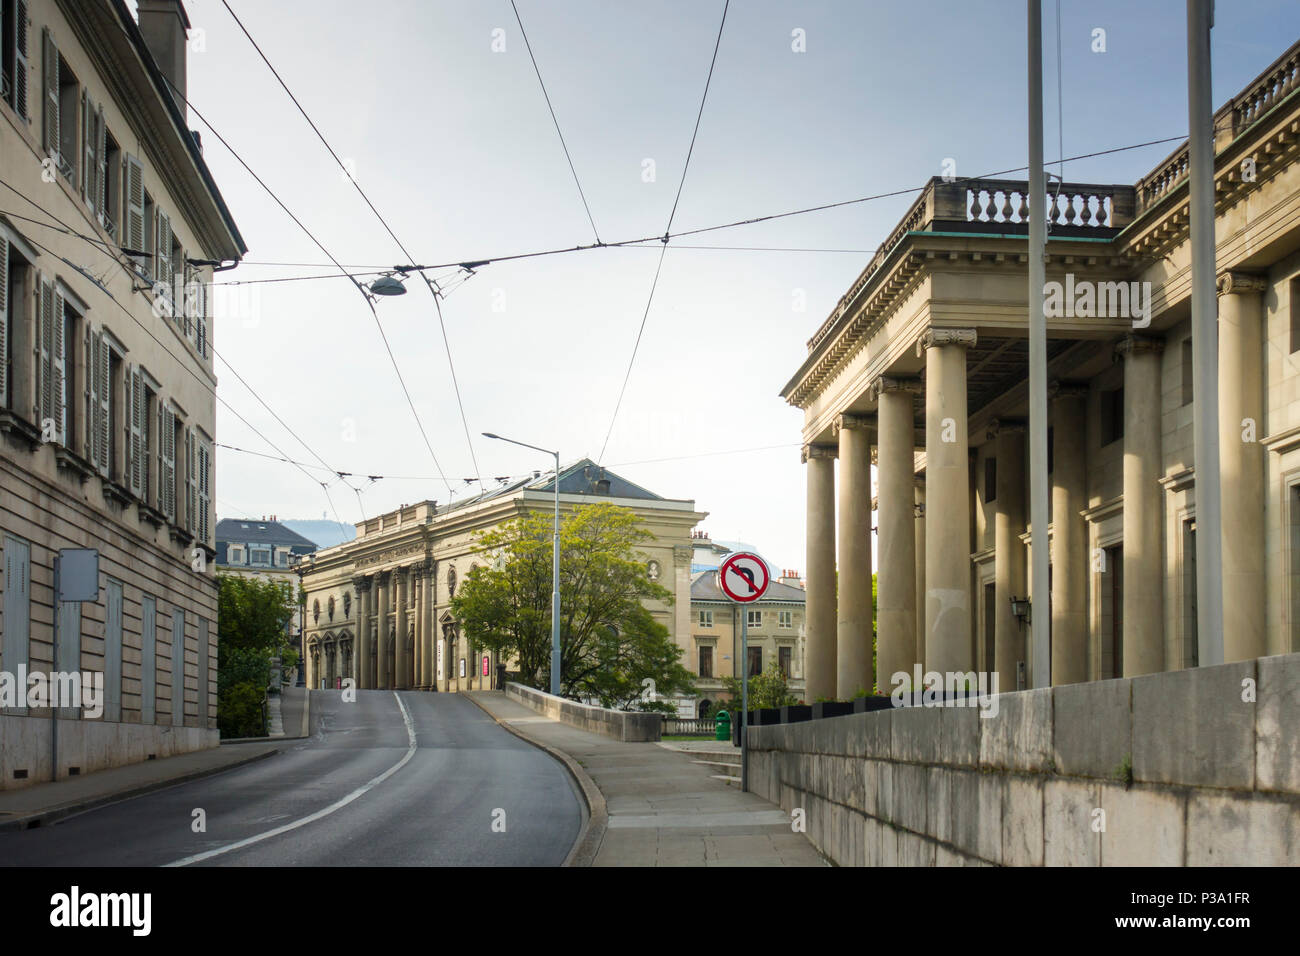 Rue de l'Athenee, Ginevra, con i primi del XIX secolo Palazzo Eynard sulla destra e 1860 Palais de l'Athenee in distanza. Foto Stock